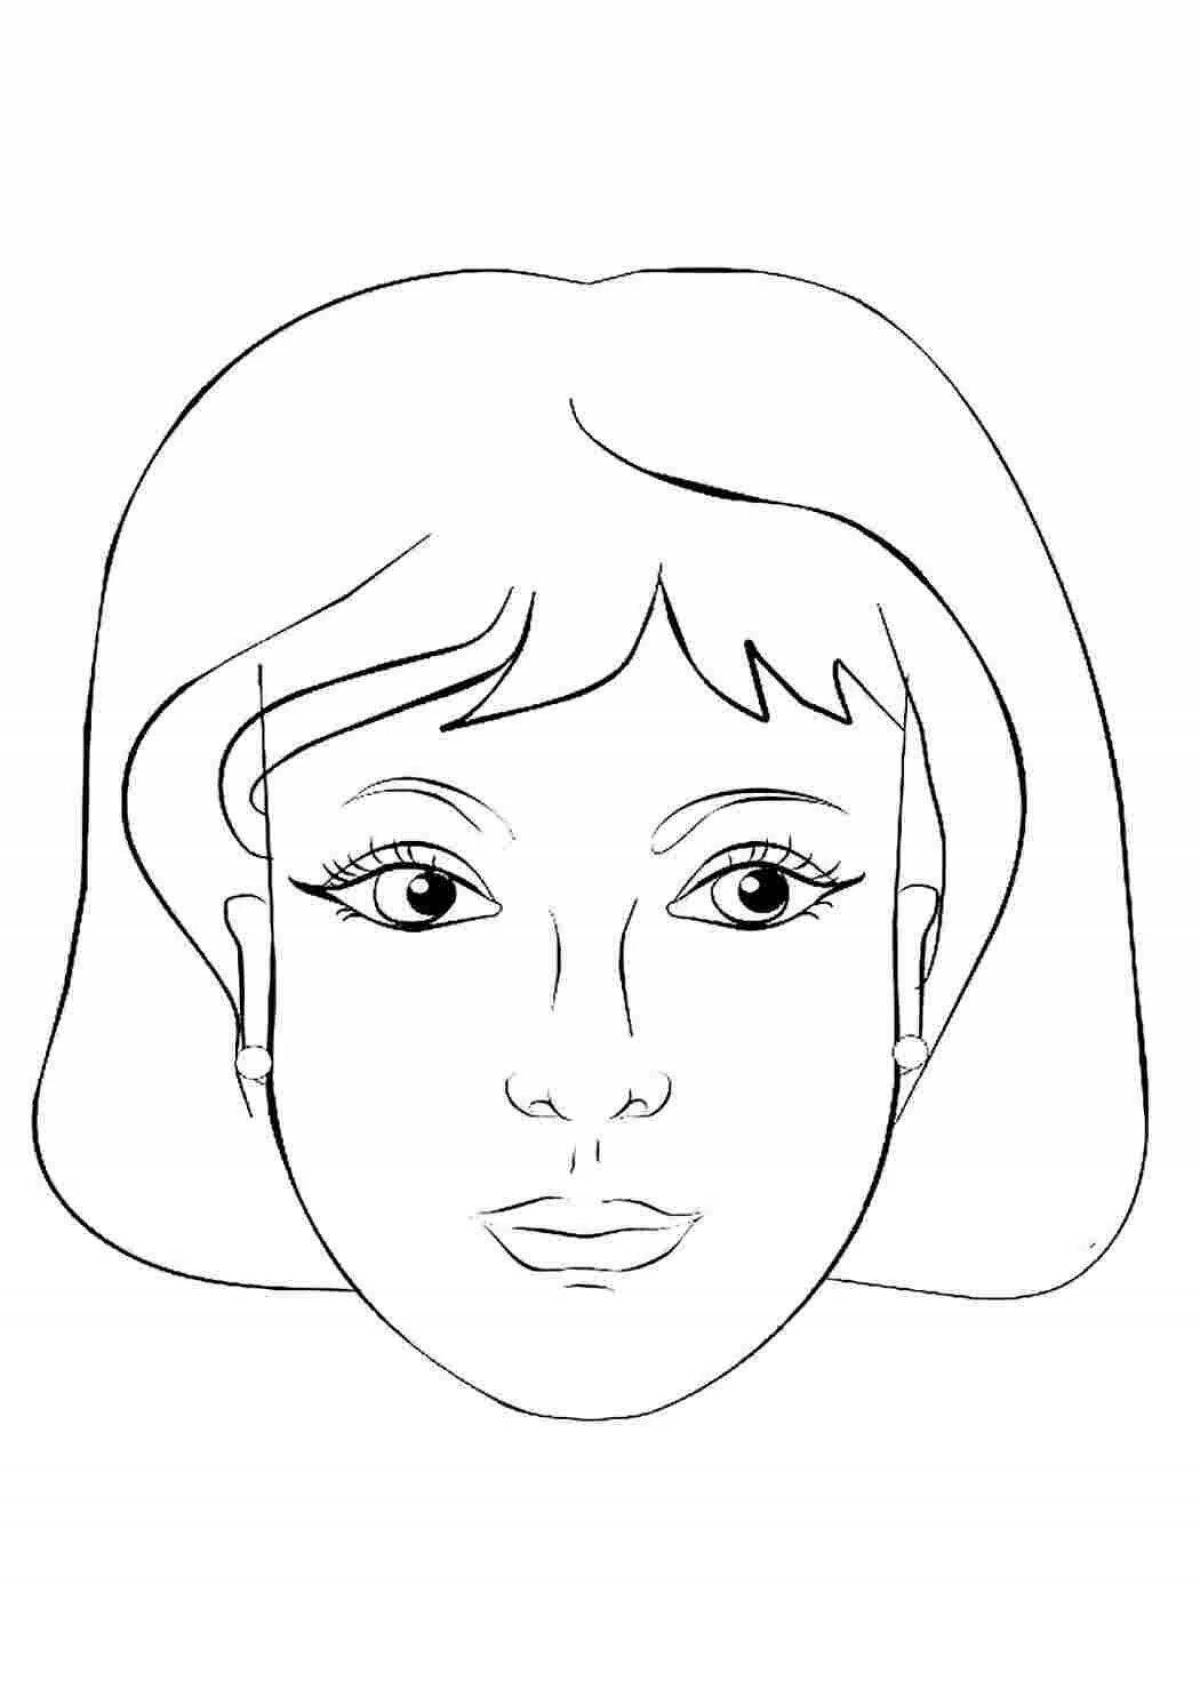 Анимированный рисунок лица